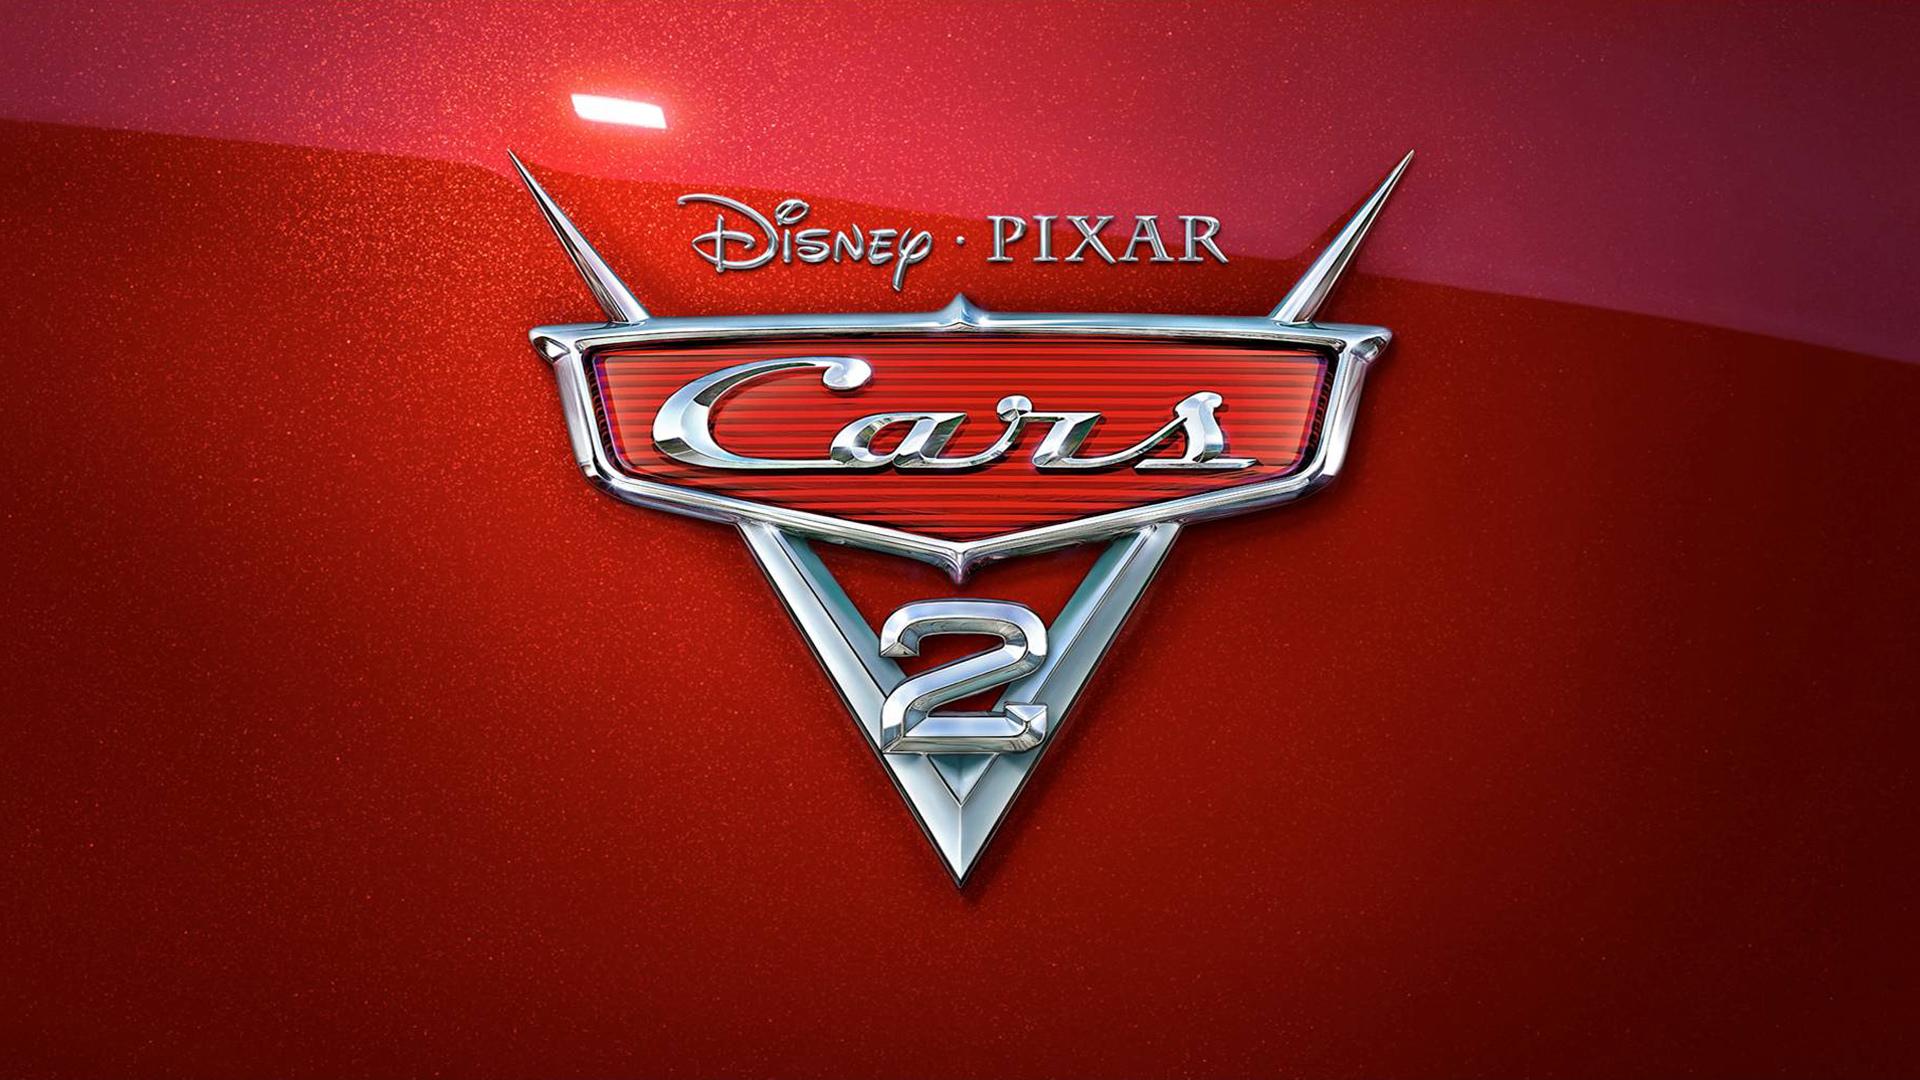 Fondos de pantalla de Cars Wallpaper Disney Pixar